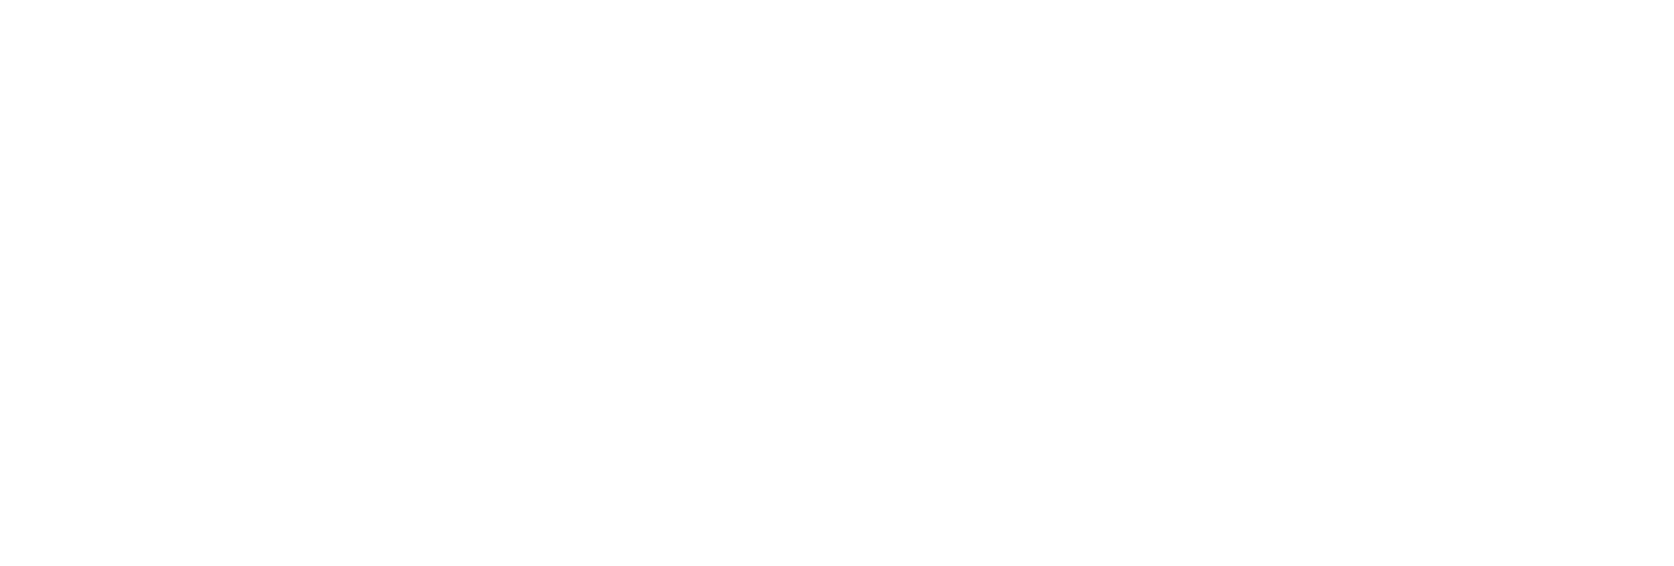 fuboTV logo large for dark backgrounds (transparent PNG)